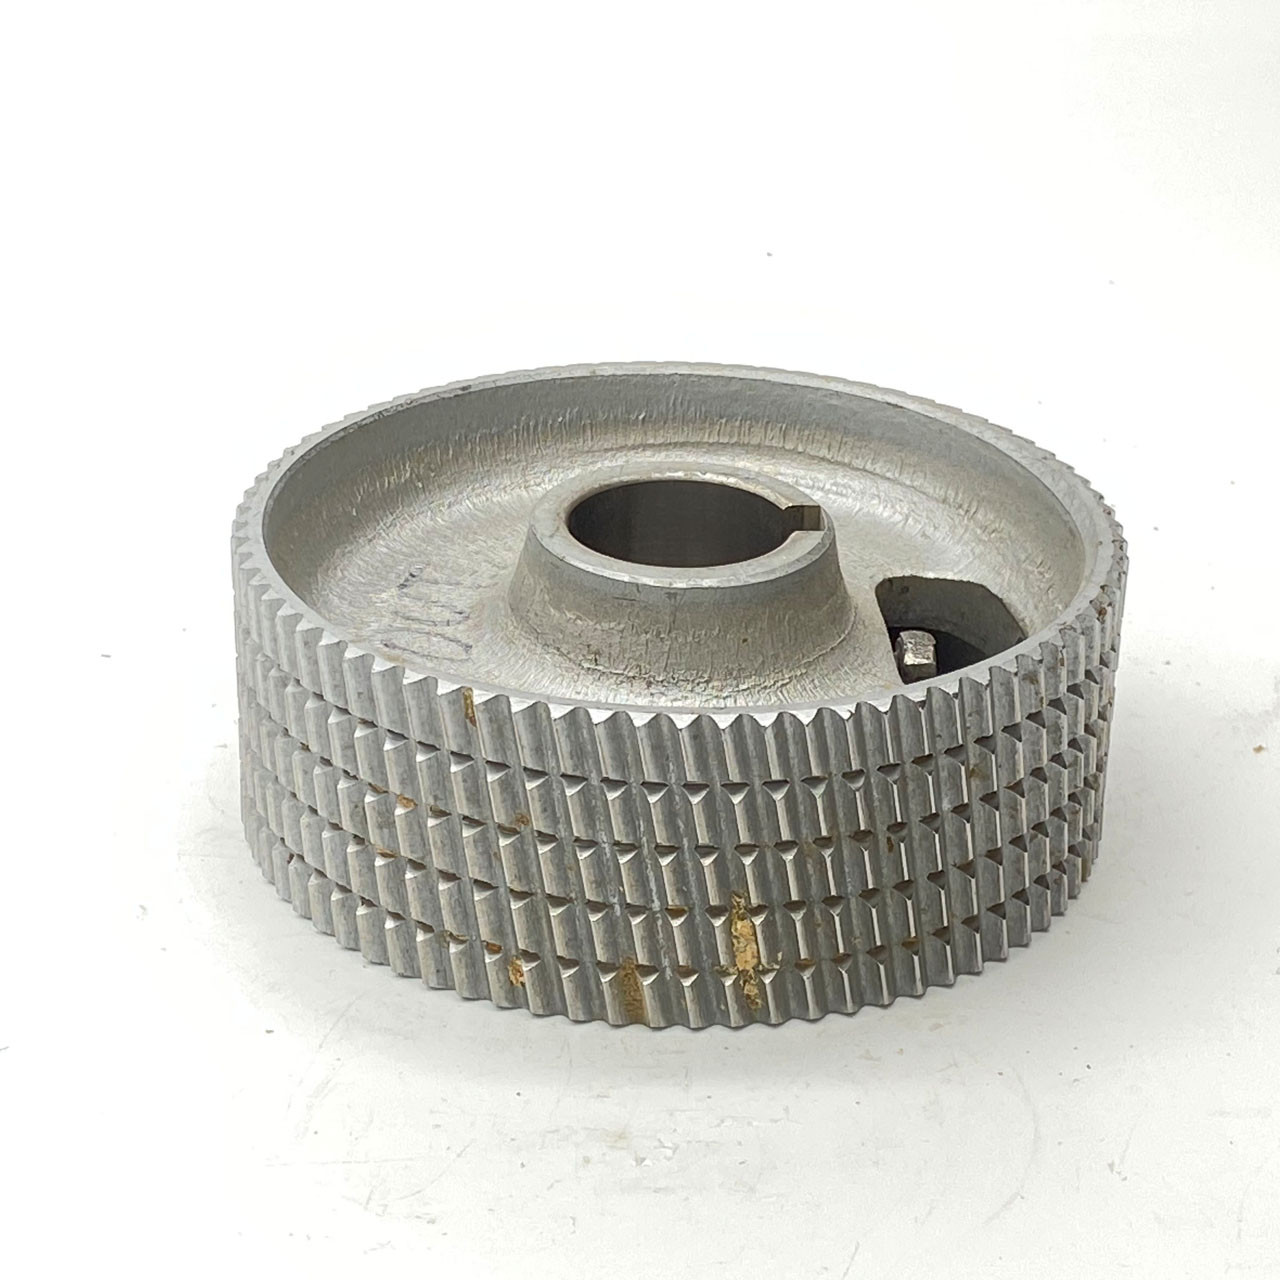 Steel Feed Roller w/Keyway 5.5" x 2" - 5